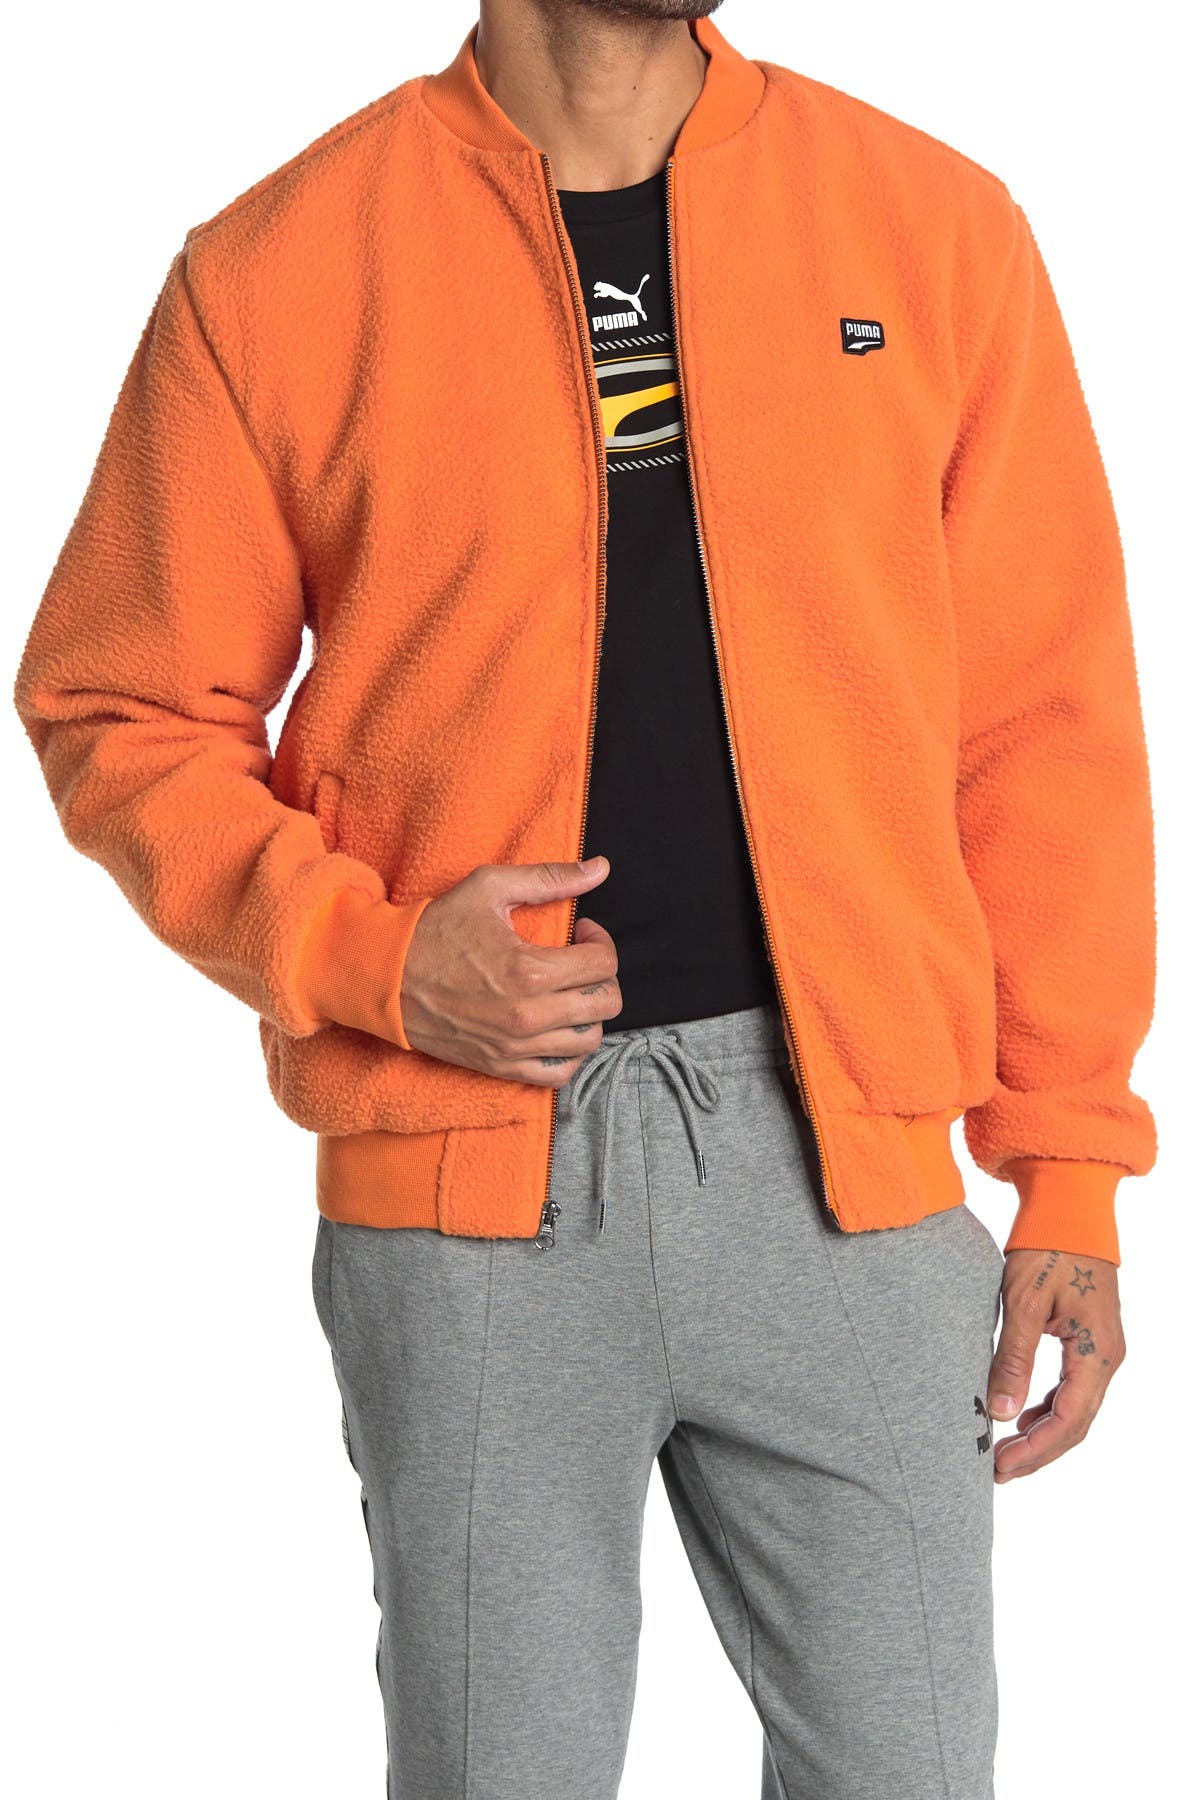 puma orange jacket